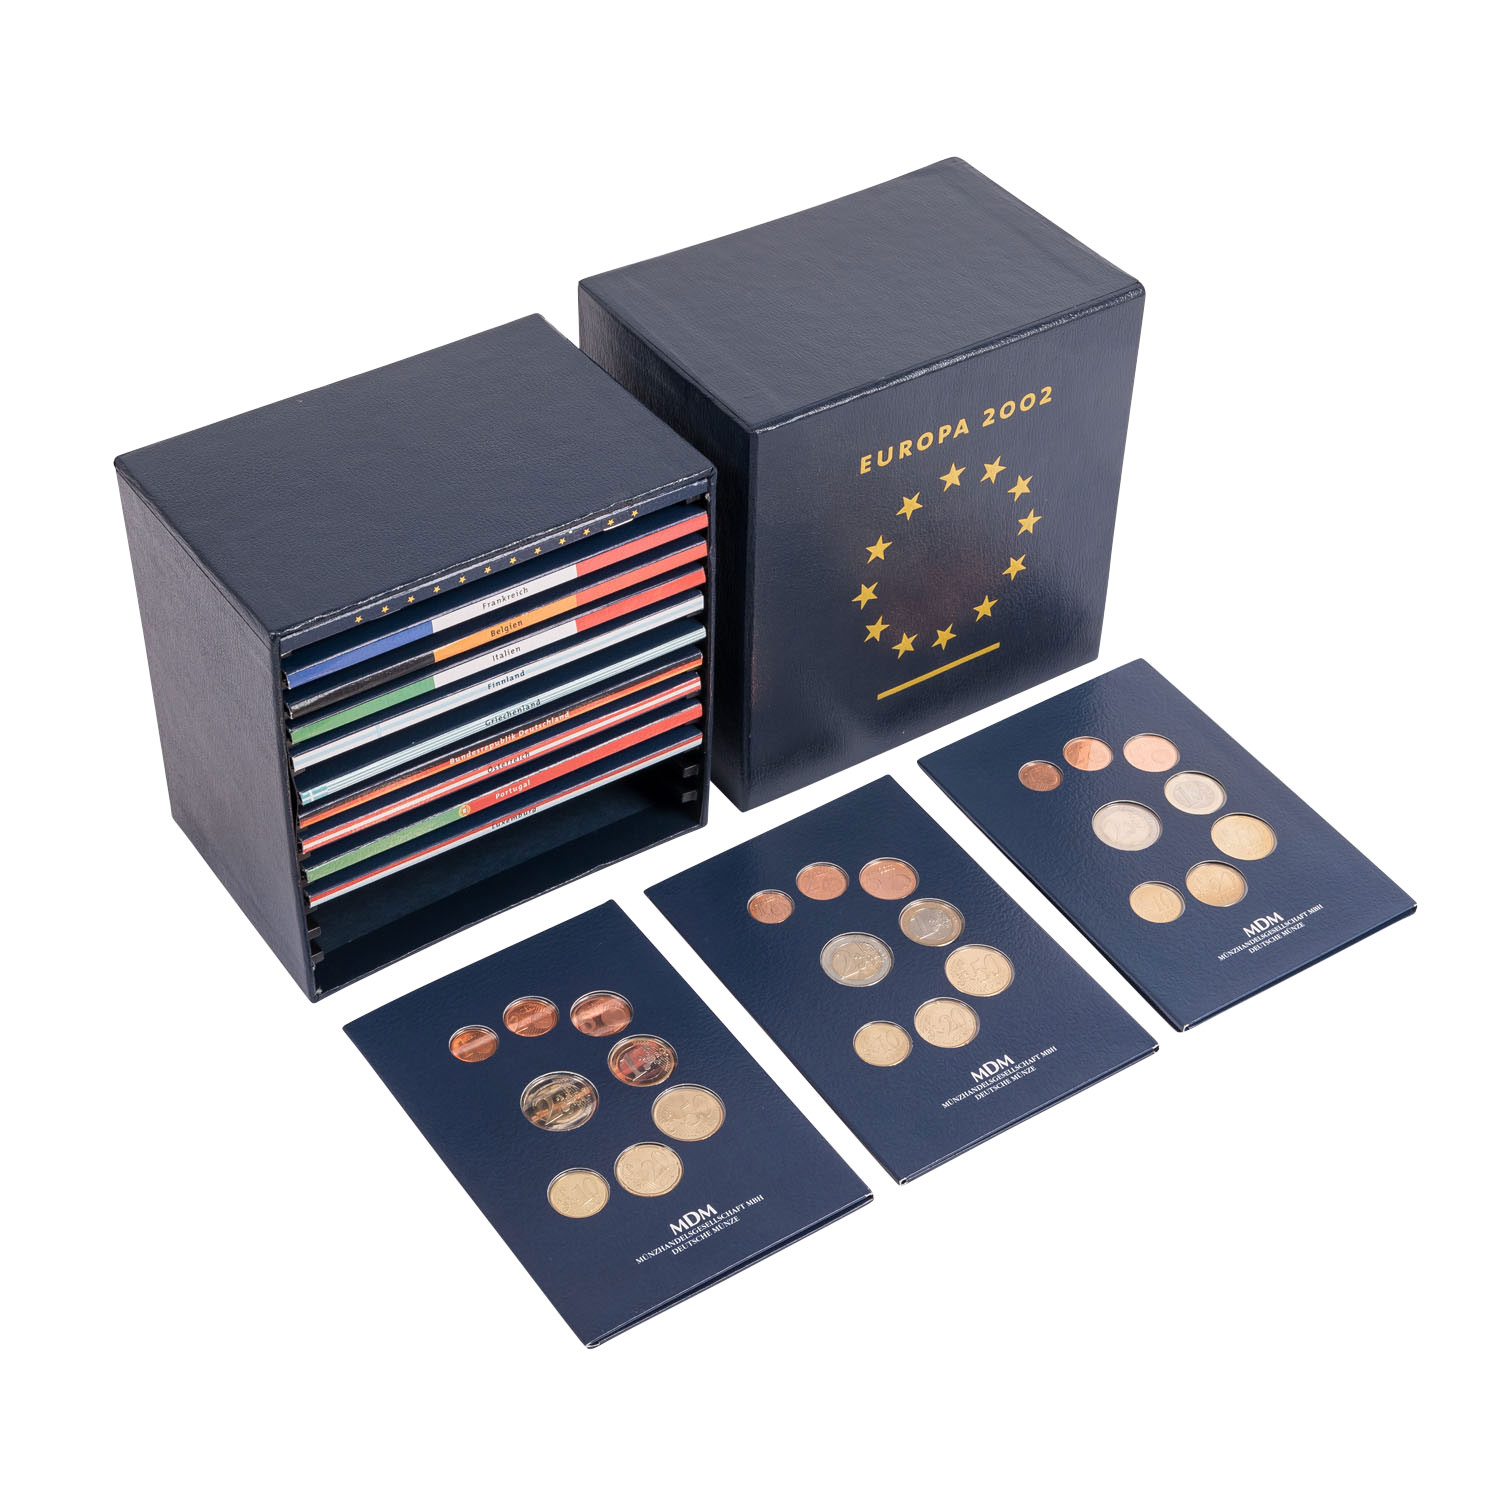 "Europa 2002 - Die ersten Euro-Kursmünzen mit excl. Silber-Gedenkprägungen" -